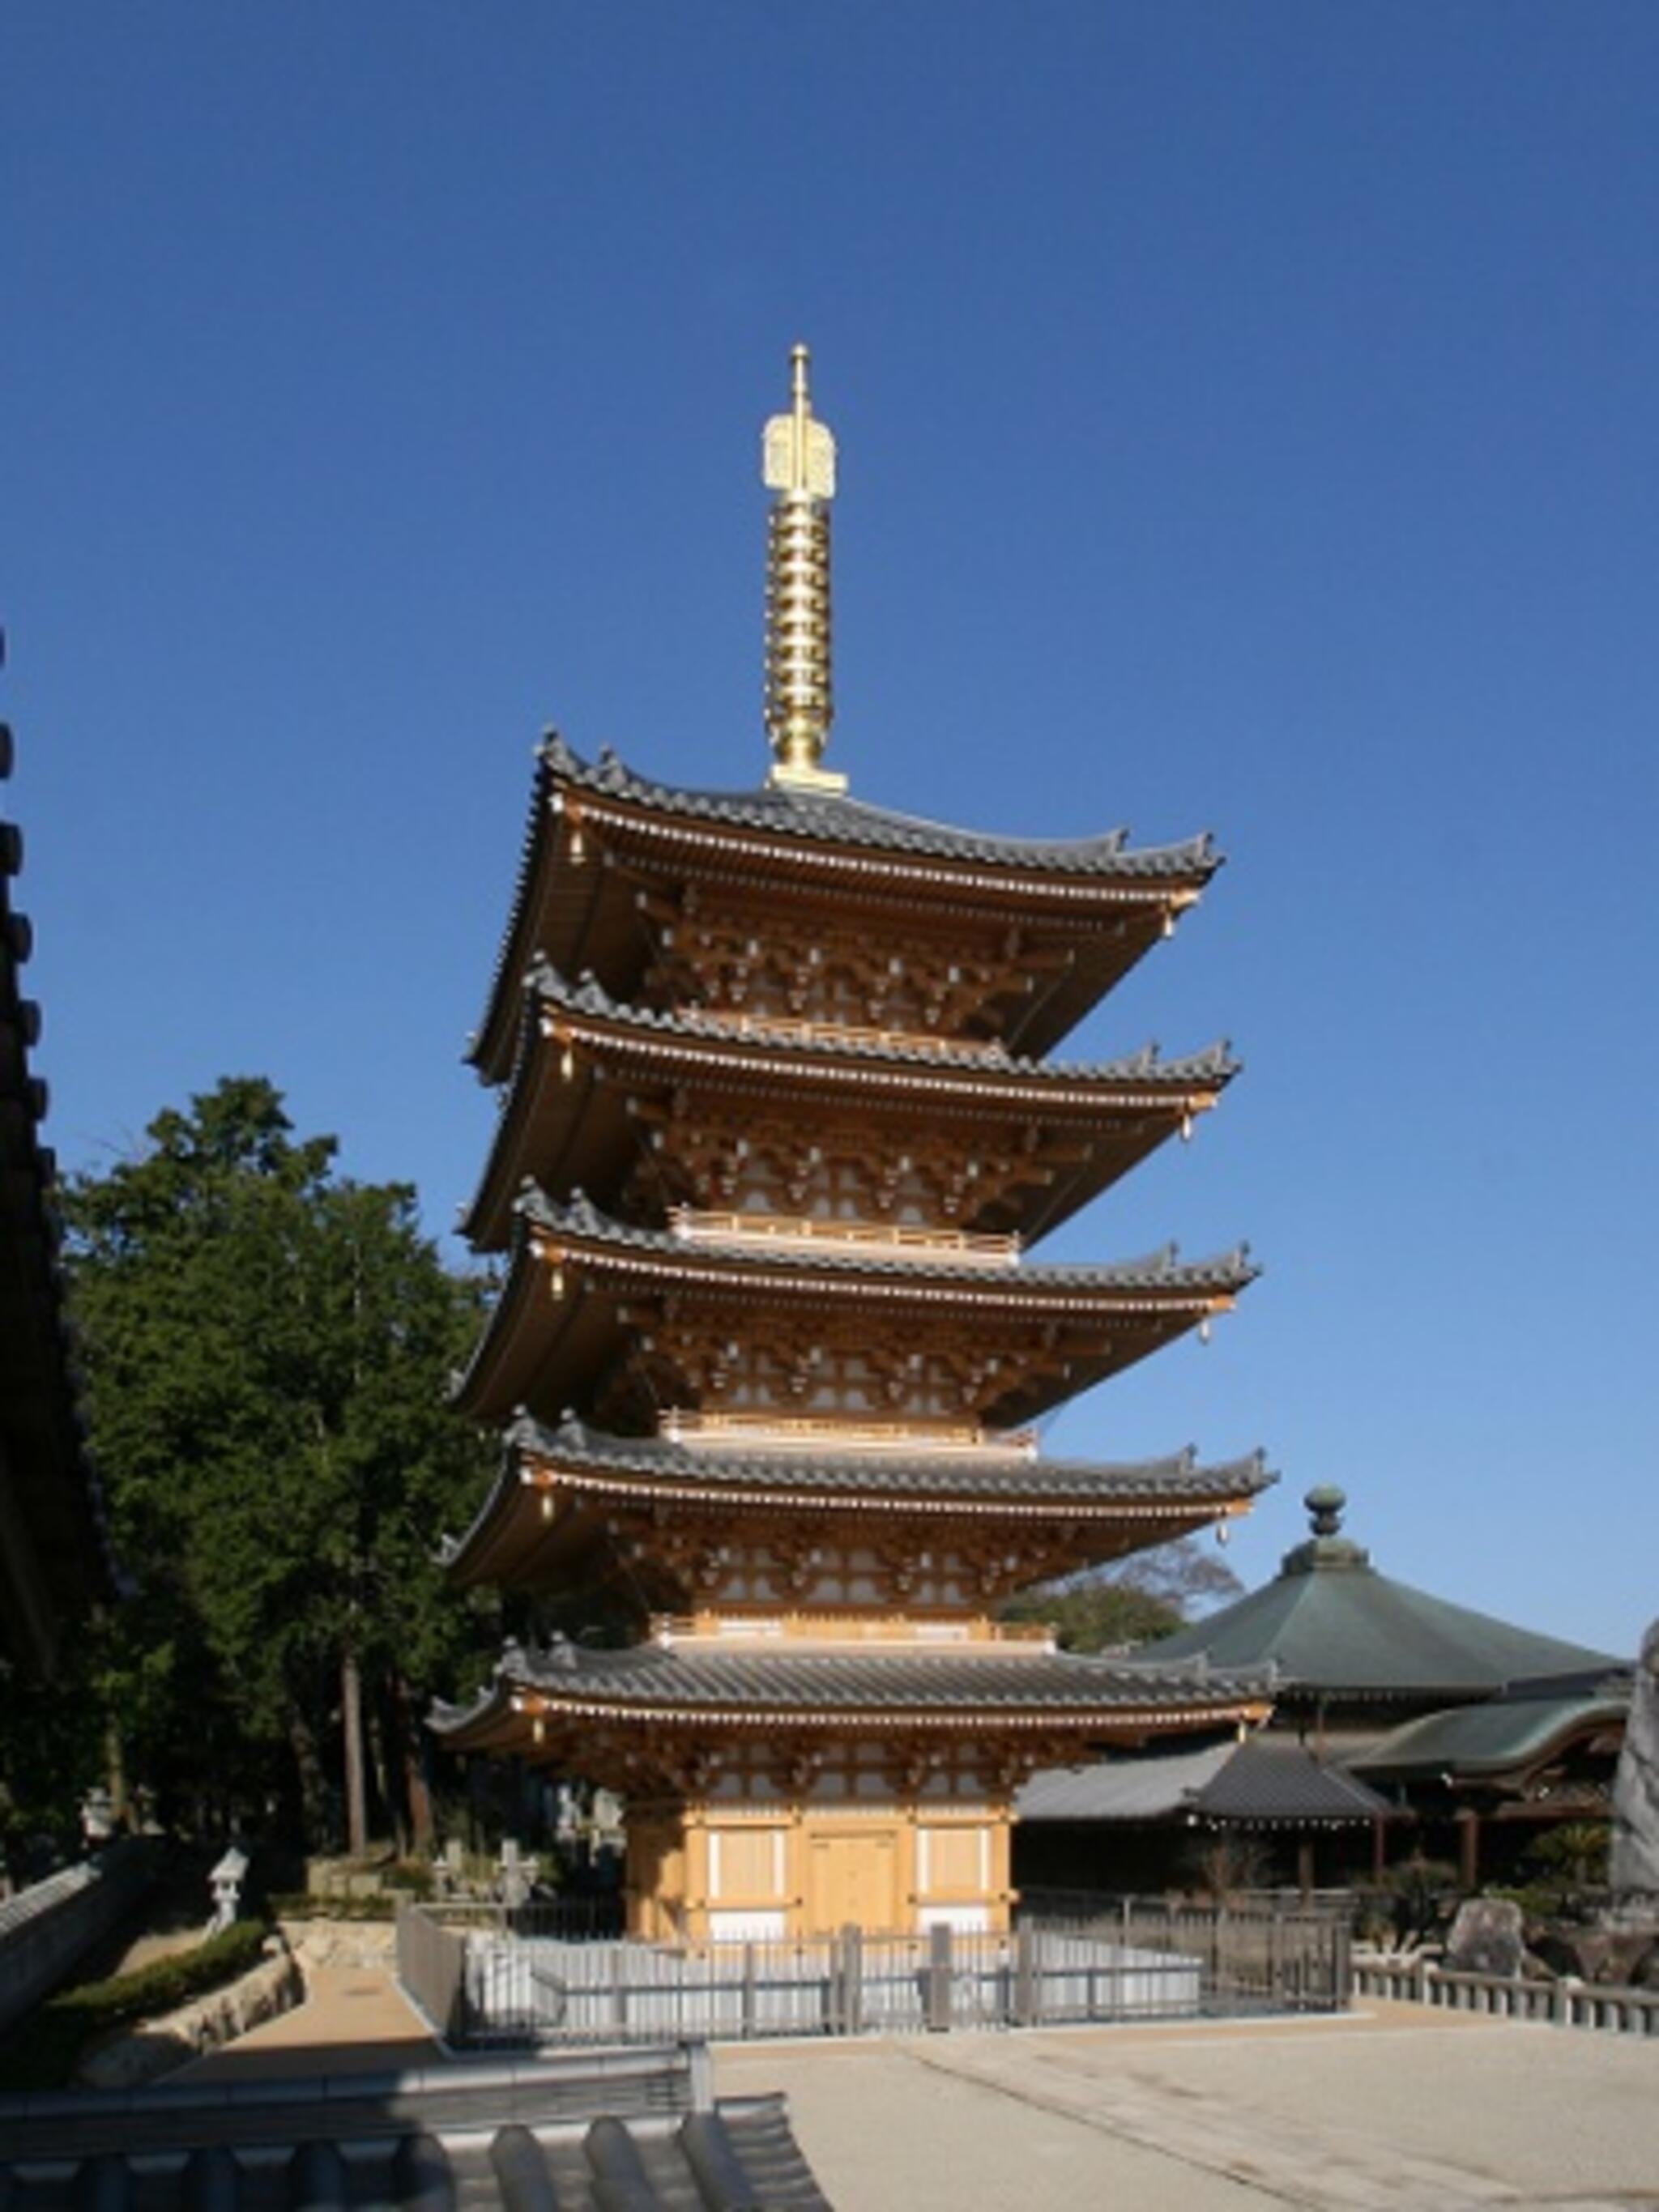 法然寺 - 高松市仏生山町/寺院 | Yahoo!マップ